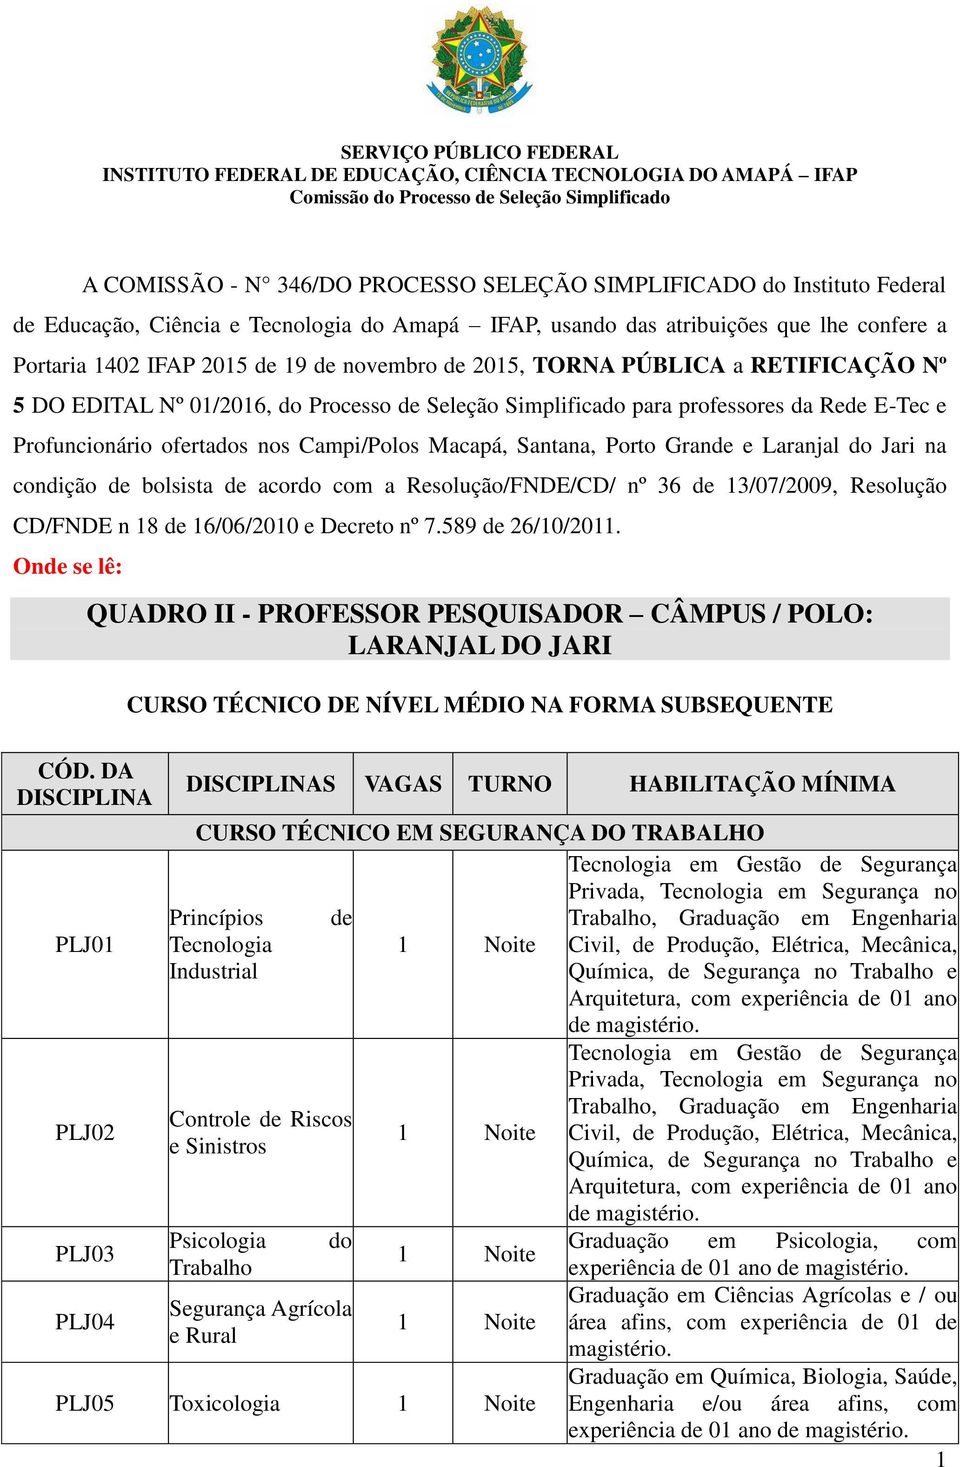 Porto Grande e Laranjal do Jari na condição de bolsista de acordo com a Resolução/FNDE/CD/ nº 36 de 13/07/2009, Resolução CD/FNDE n 18 de 16/06/2010 e Decreto nº 7.589 de 26/10/2011.